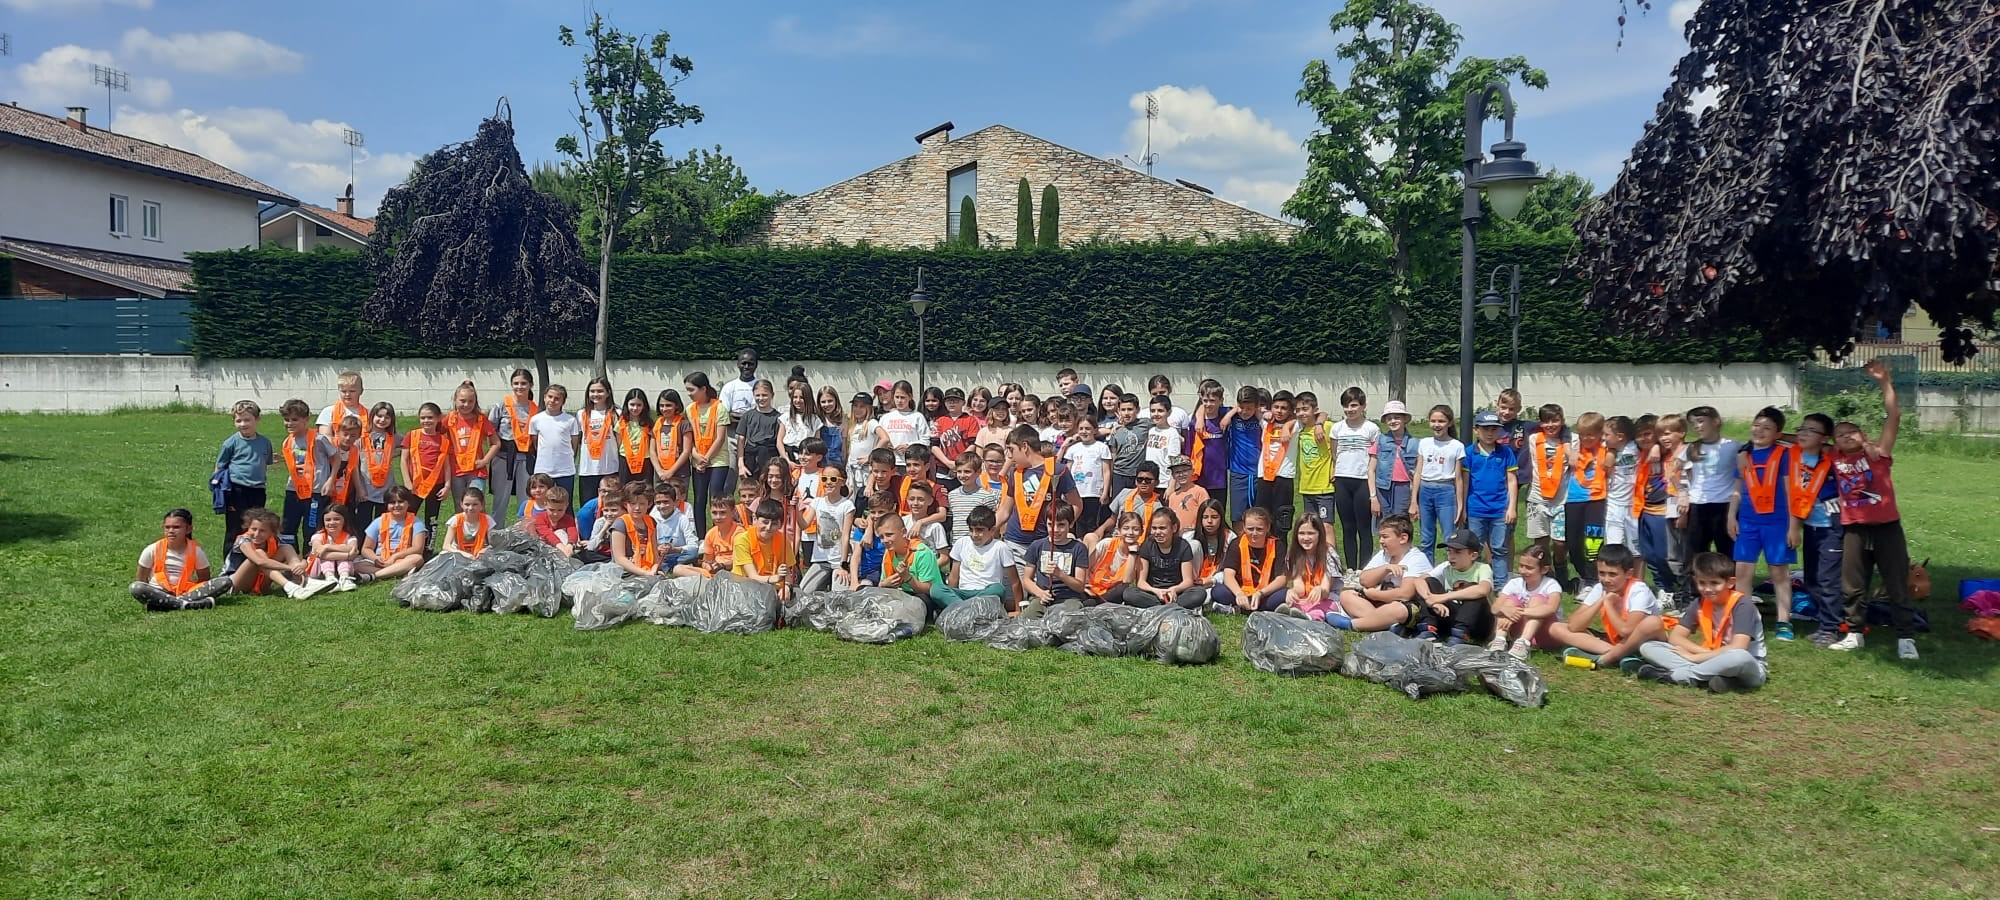 La Guida - Borgo, i bambini della scuola primaria puliscono i parchi